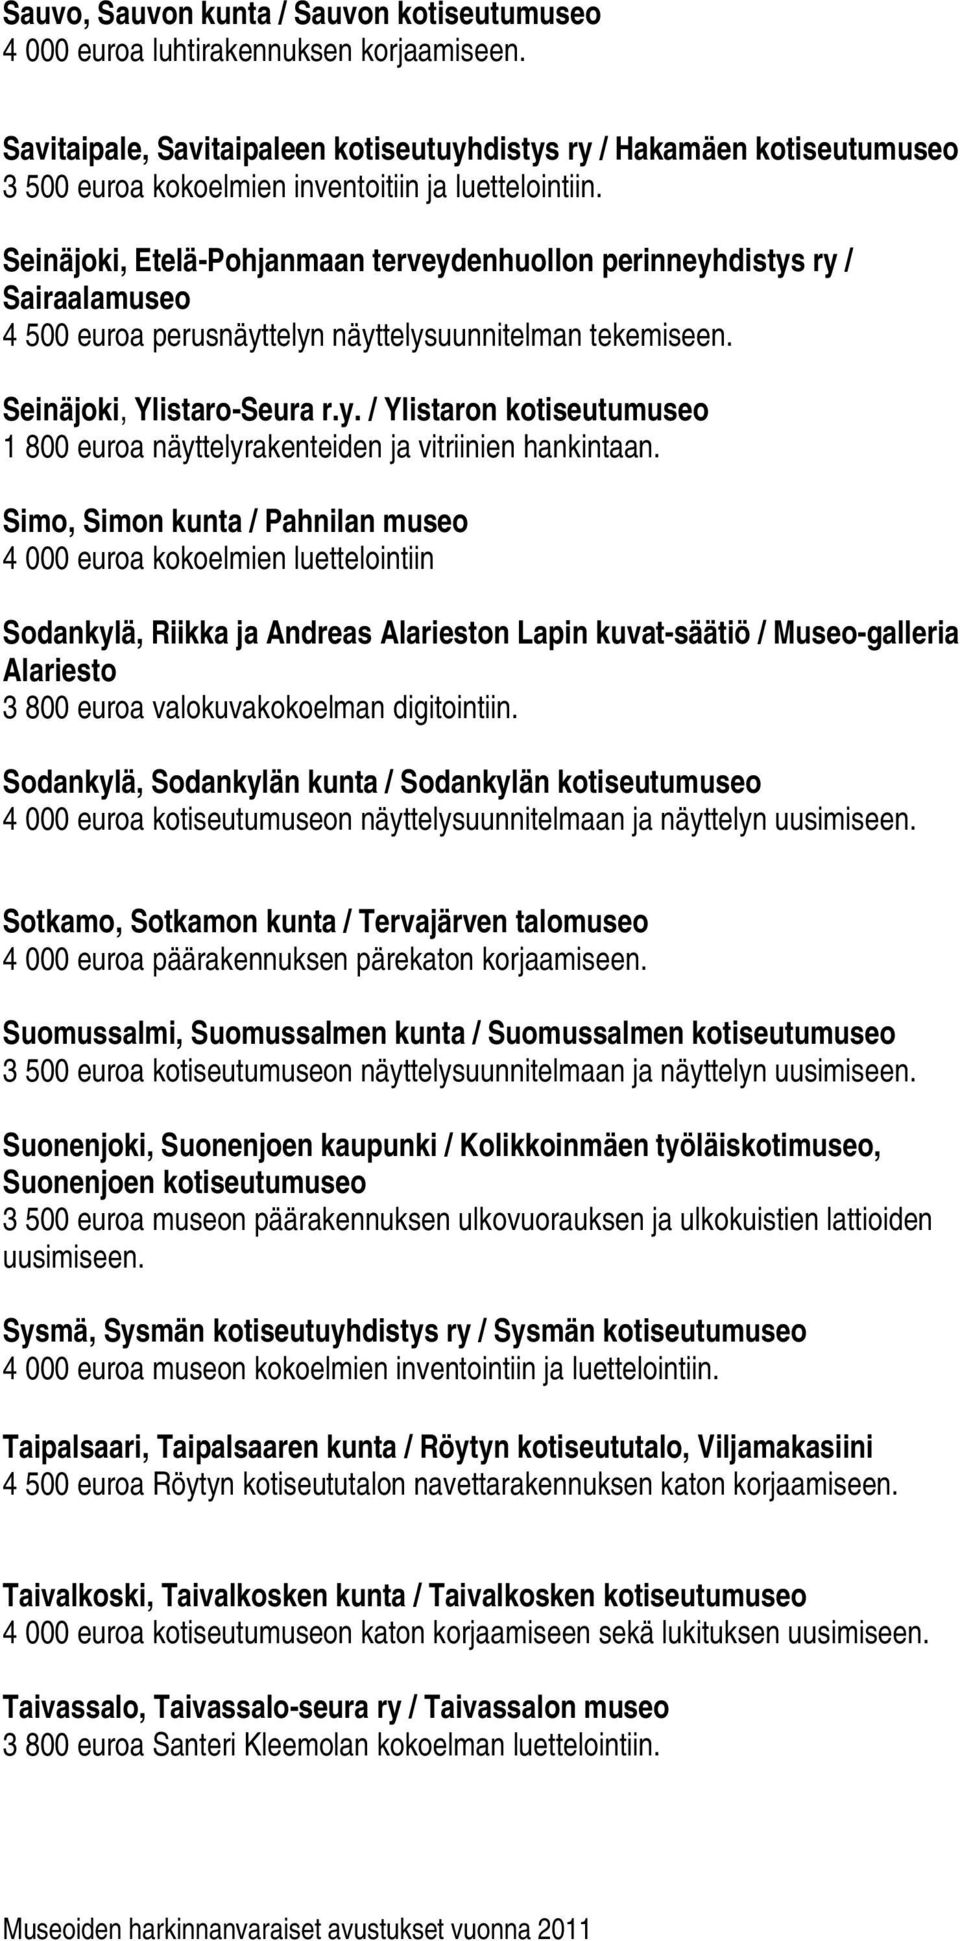 Seinäjoki, Etelä-Pohjanmaan terveydenhuollon perinneyhdistys ry / Sairaalamuseo 4 500 euroa perusnäyttelyn näyttelysuunnitelman tekemiseen. Seinäjoki, Ylistaro-Seura r.y. / Ylistaron kotiseutumuseo 1 800 euroa näyttelyrakenteiden ja vitriinien hankintaan.